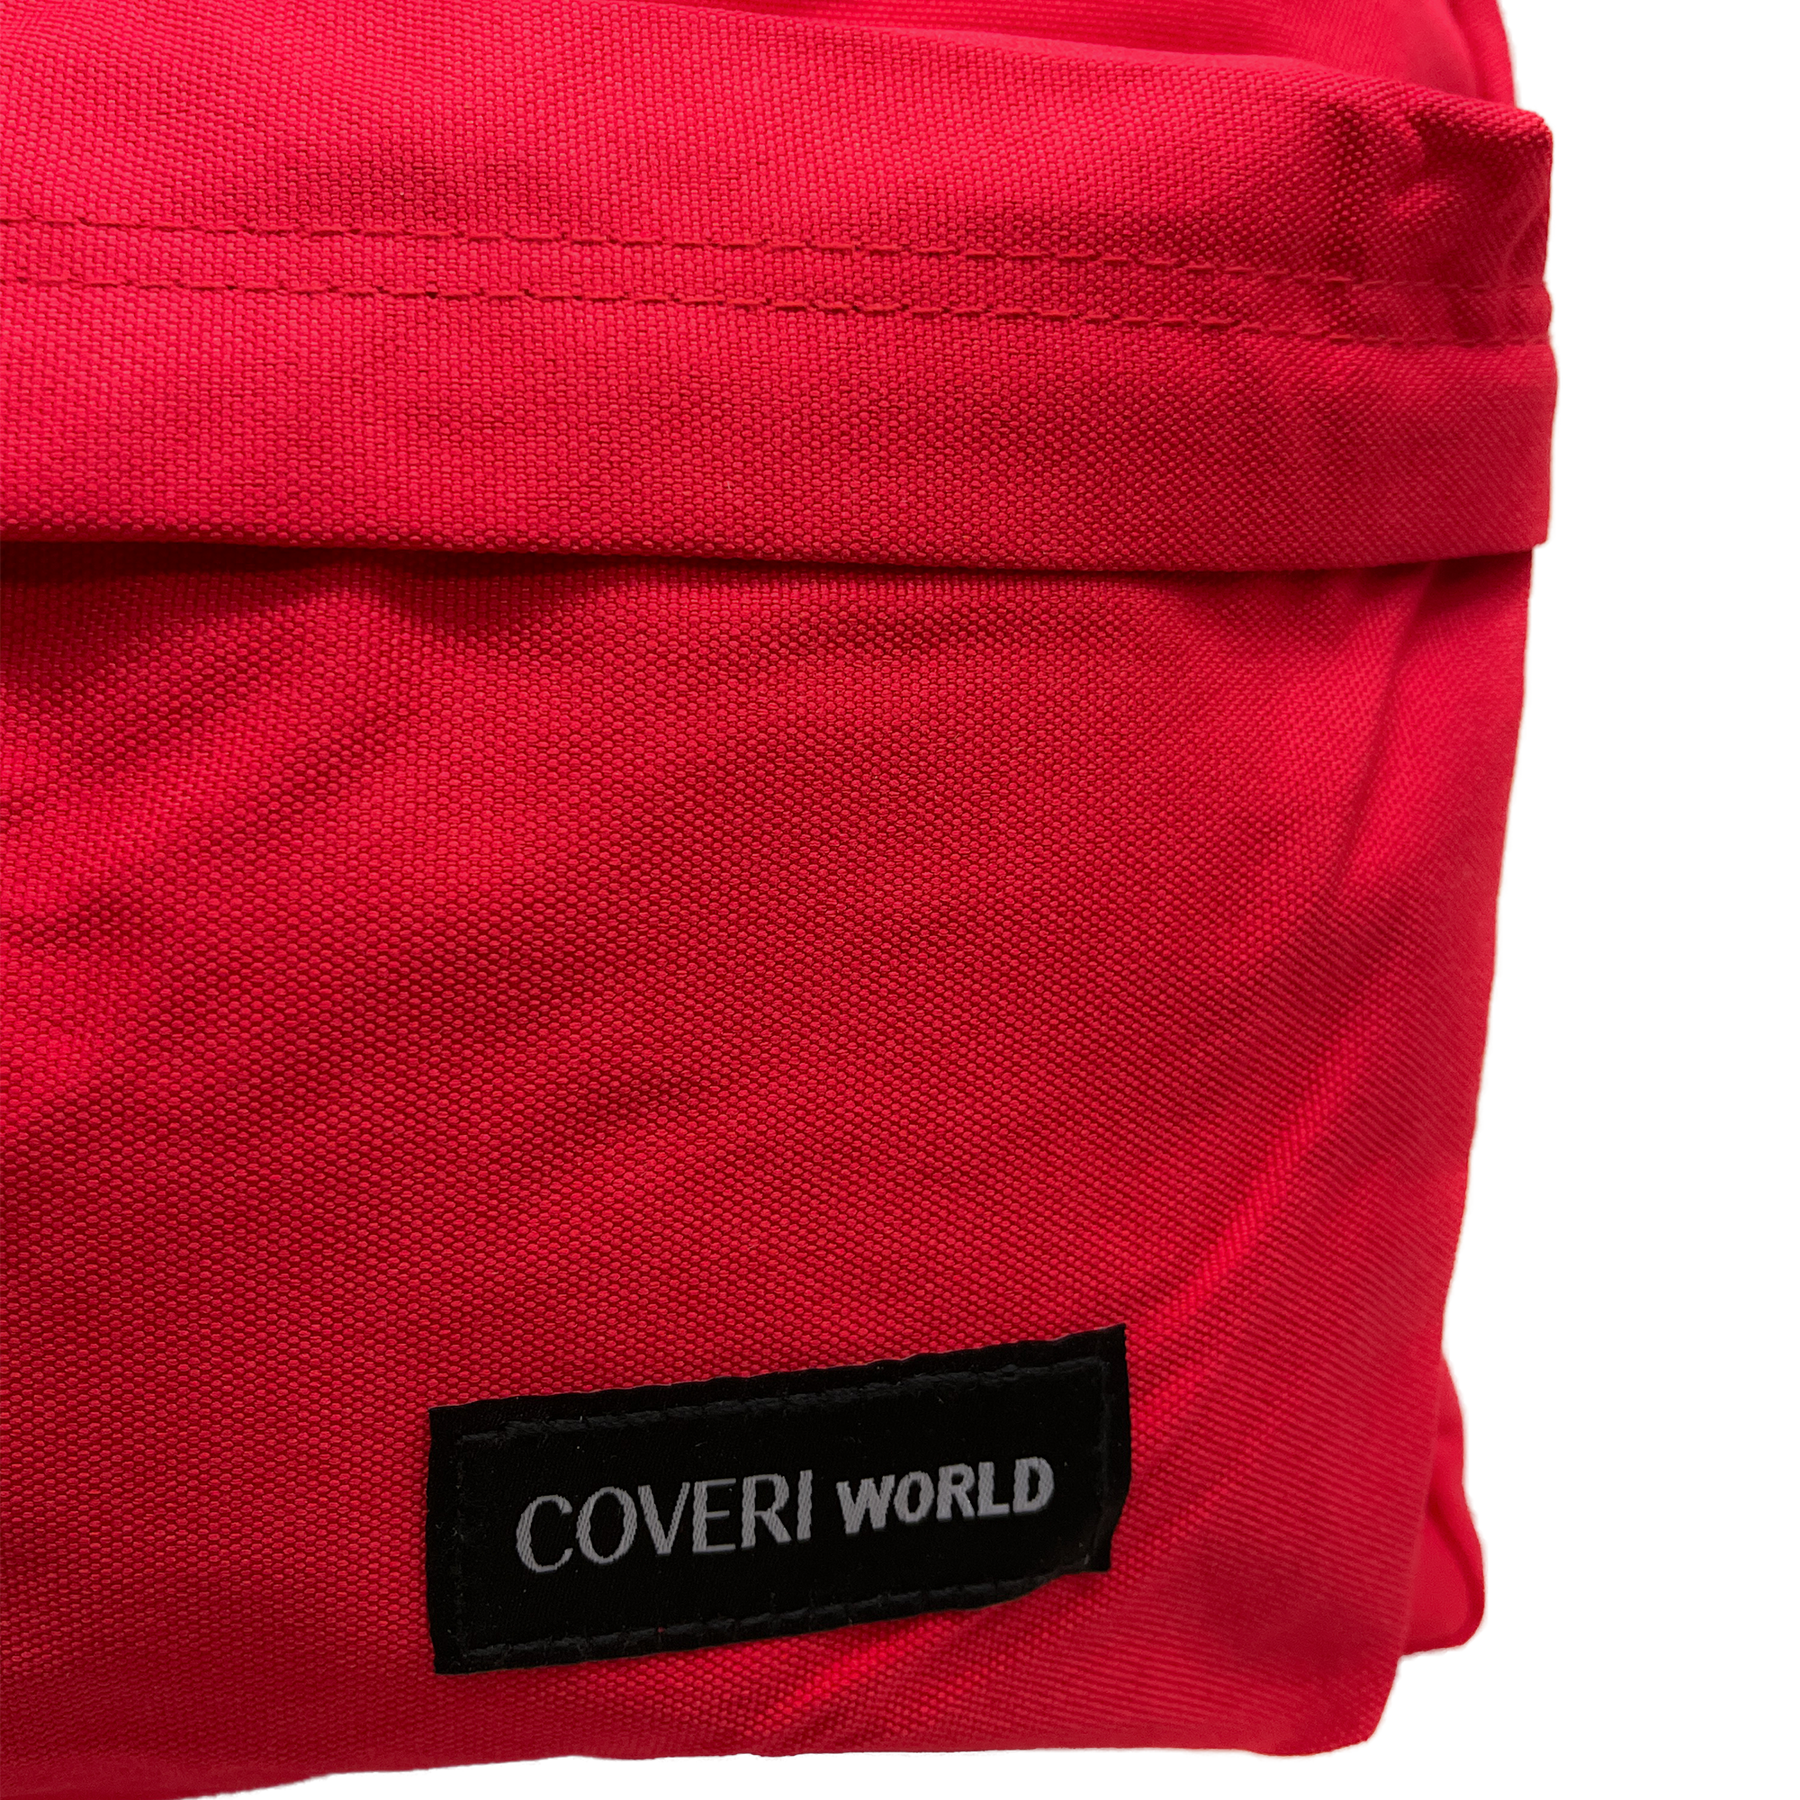 Coveri World - Wytrzymały plecak z poliestru - 44 x 29,5 x 22 cm, 27 litrów